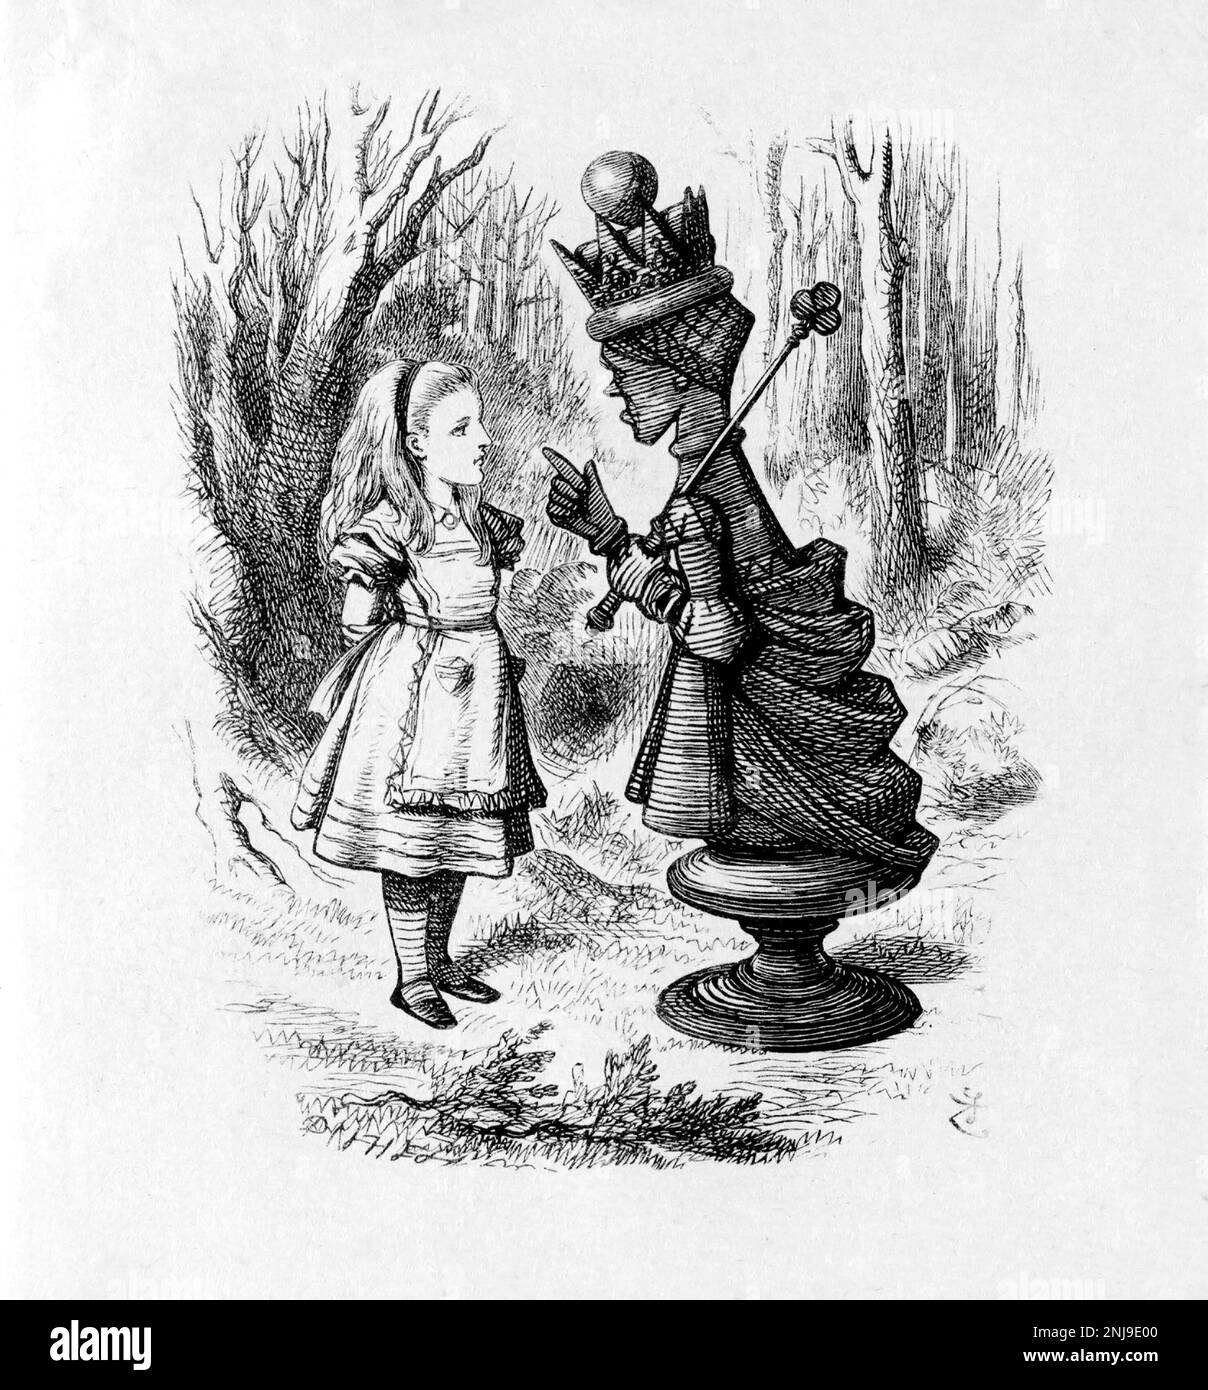 Alice et la Reine Rouge, une illustration de Sir John Tenniel pour Lewis Carroll, « Through the look-Glass, and What Alice y trouva », gravure, 1872 Banque D'Images